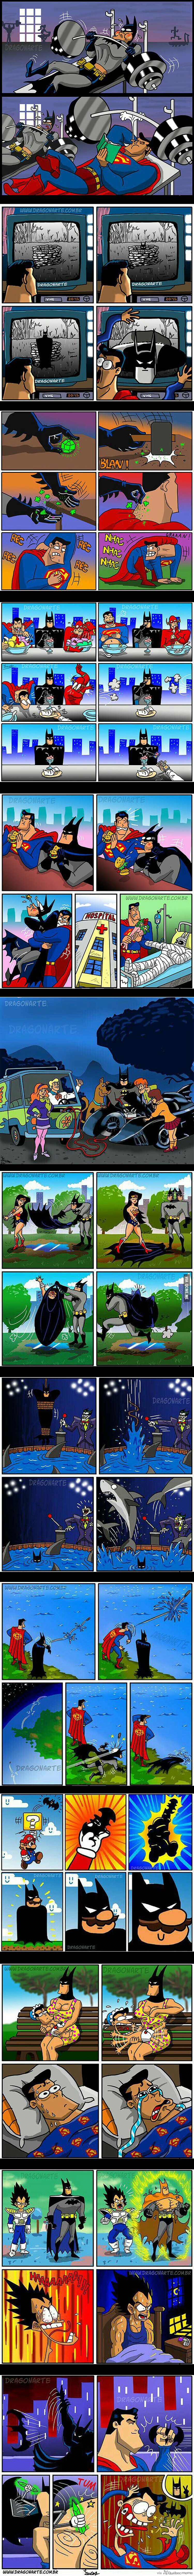 12 Petites BD de Batman VS Superman